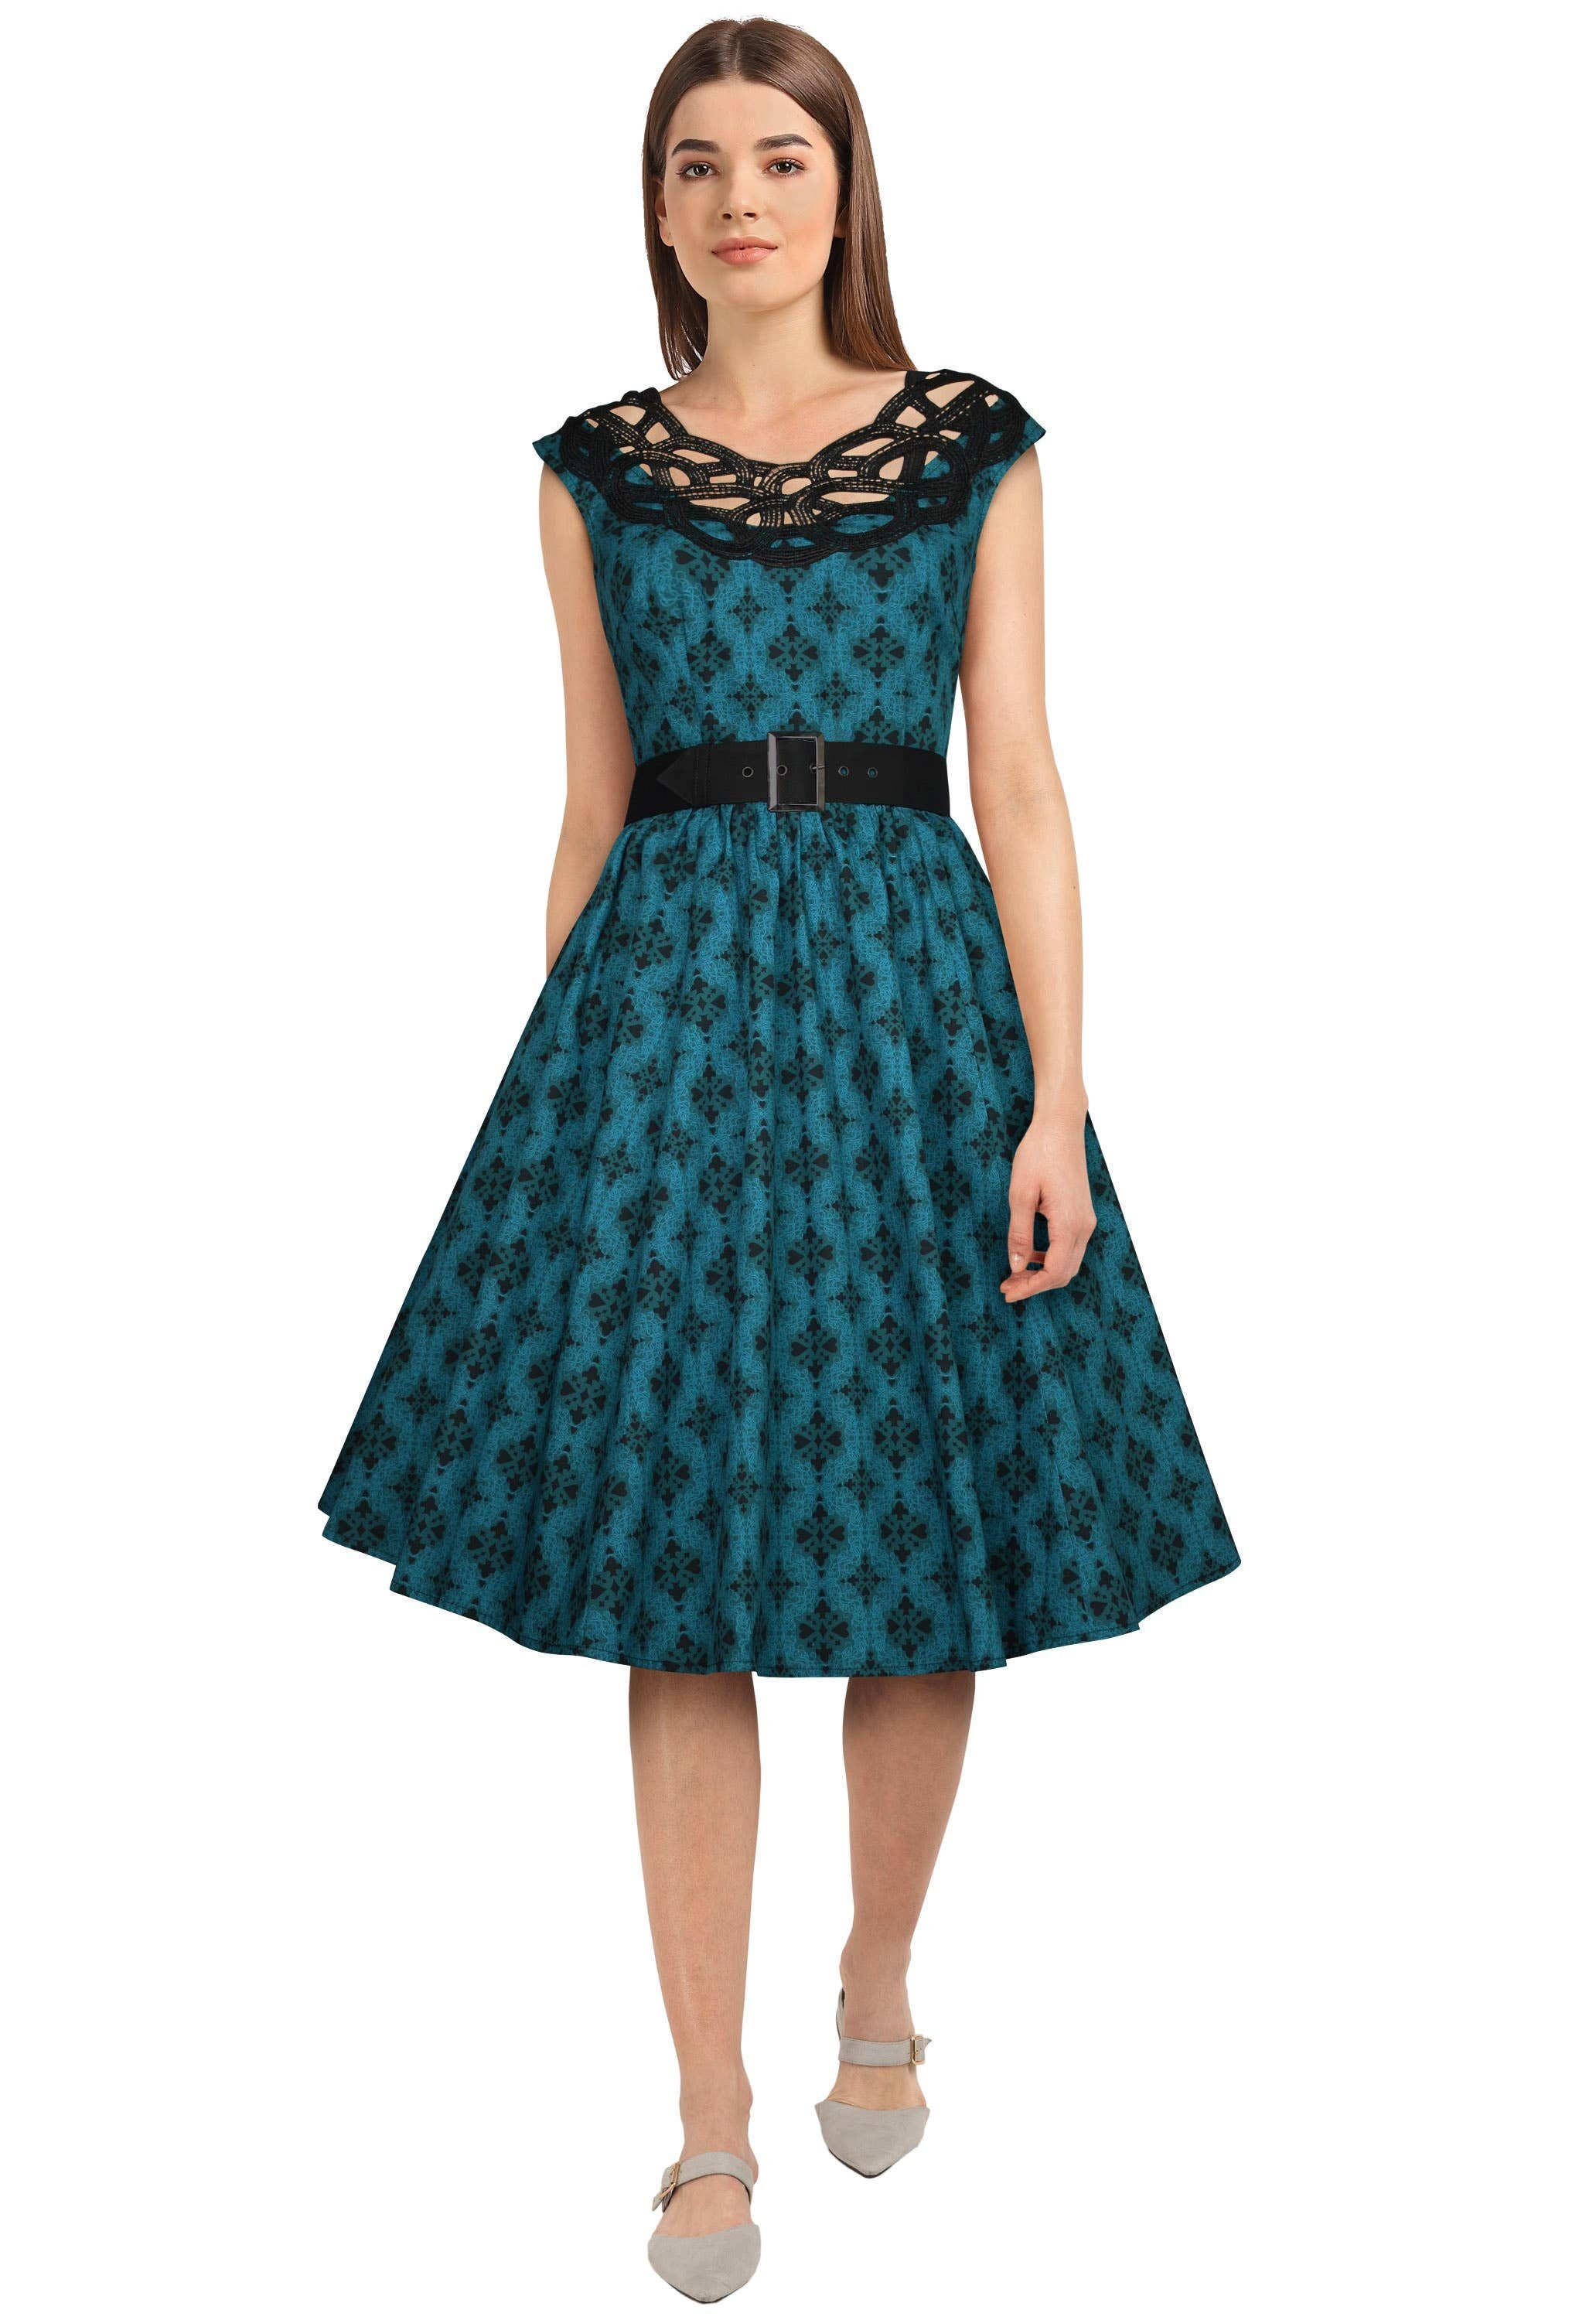 Chic Star Petticoat-Kleid Romantisches retro Kleid in schwarz-türkis Spitze